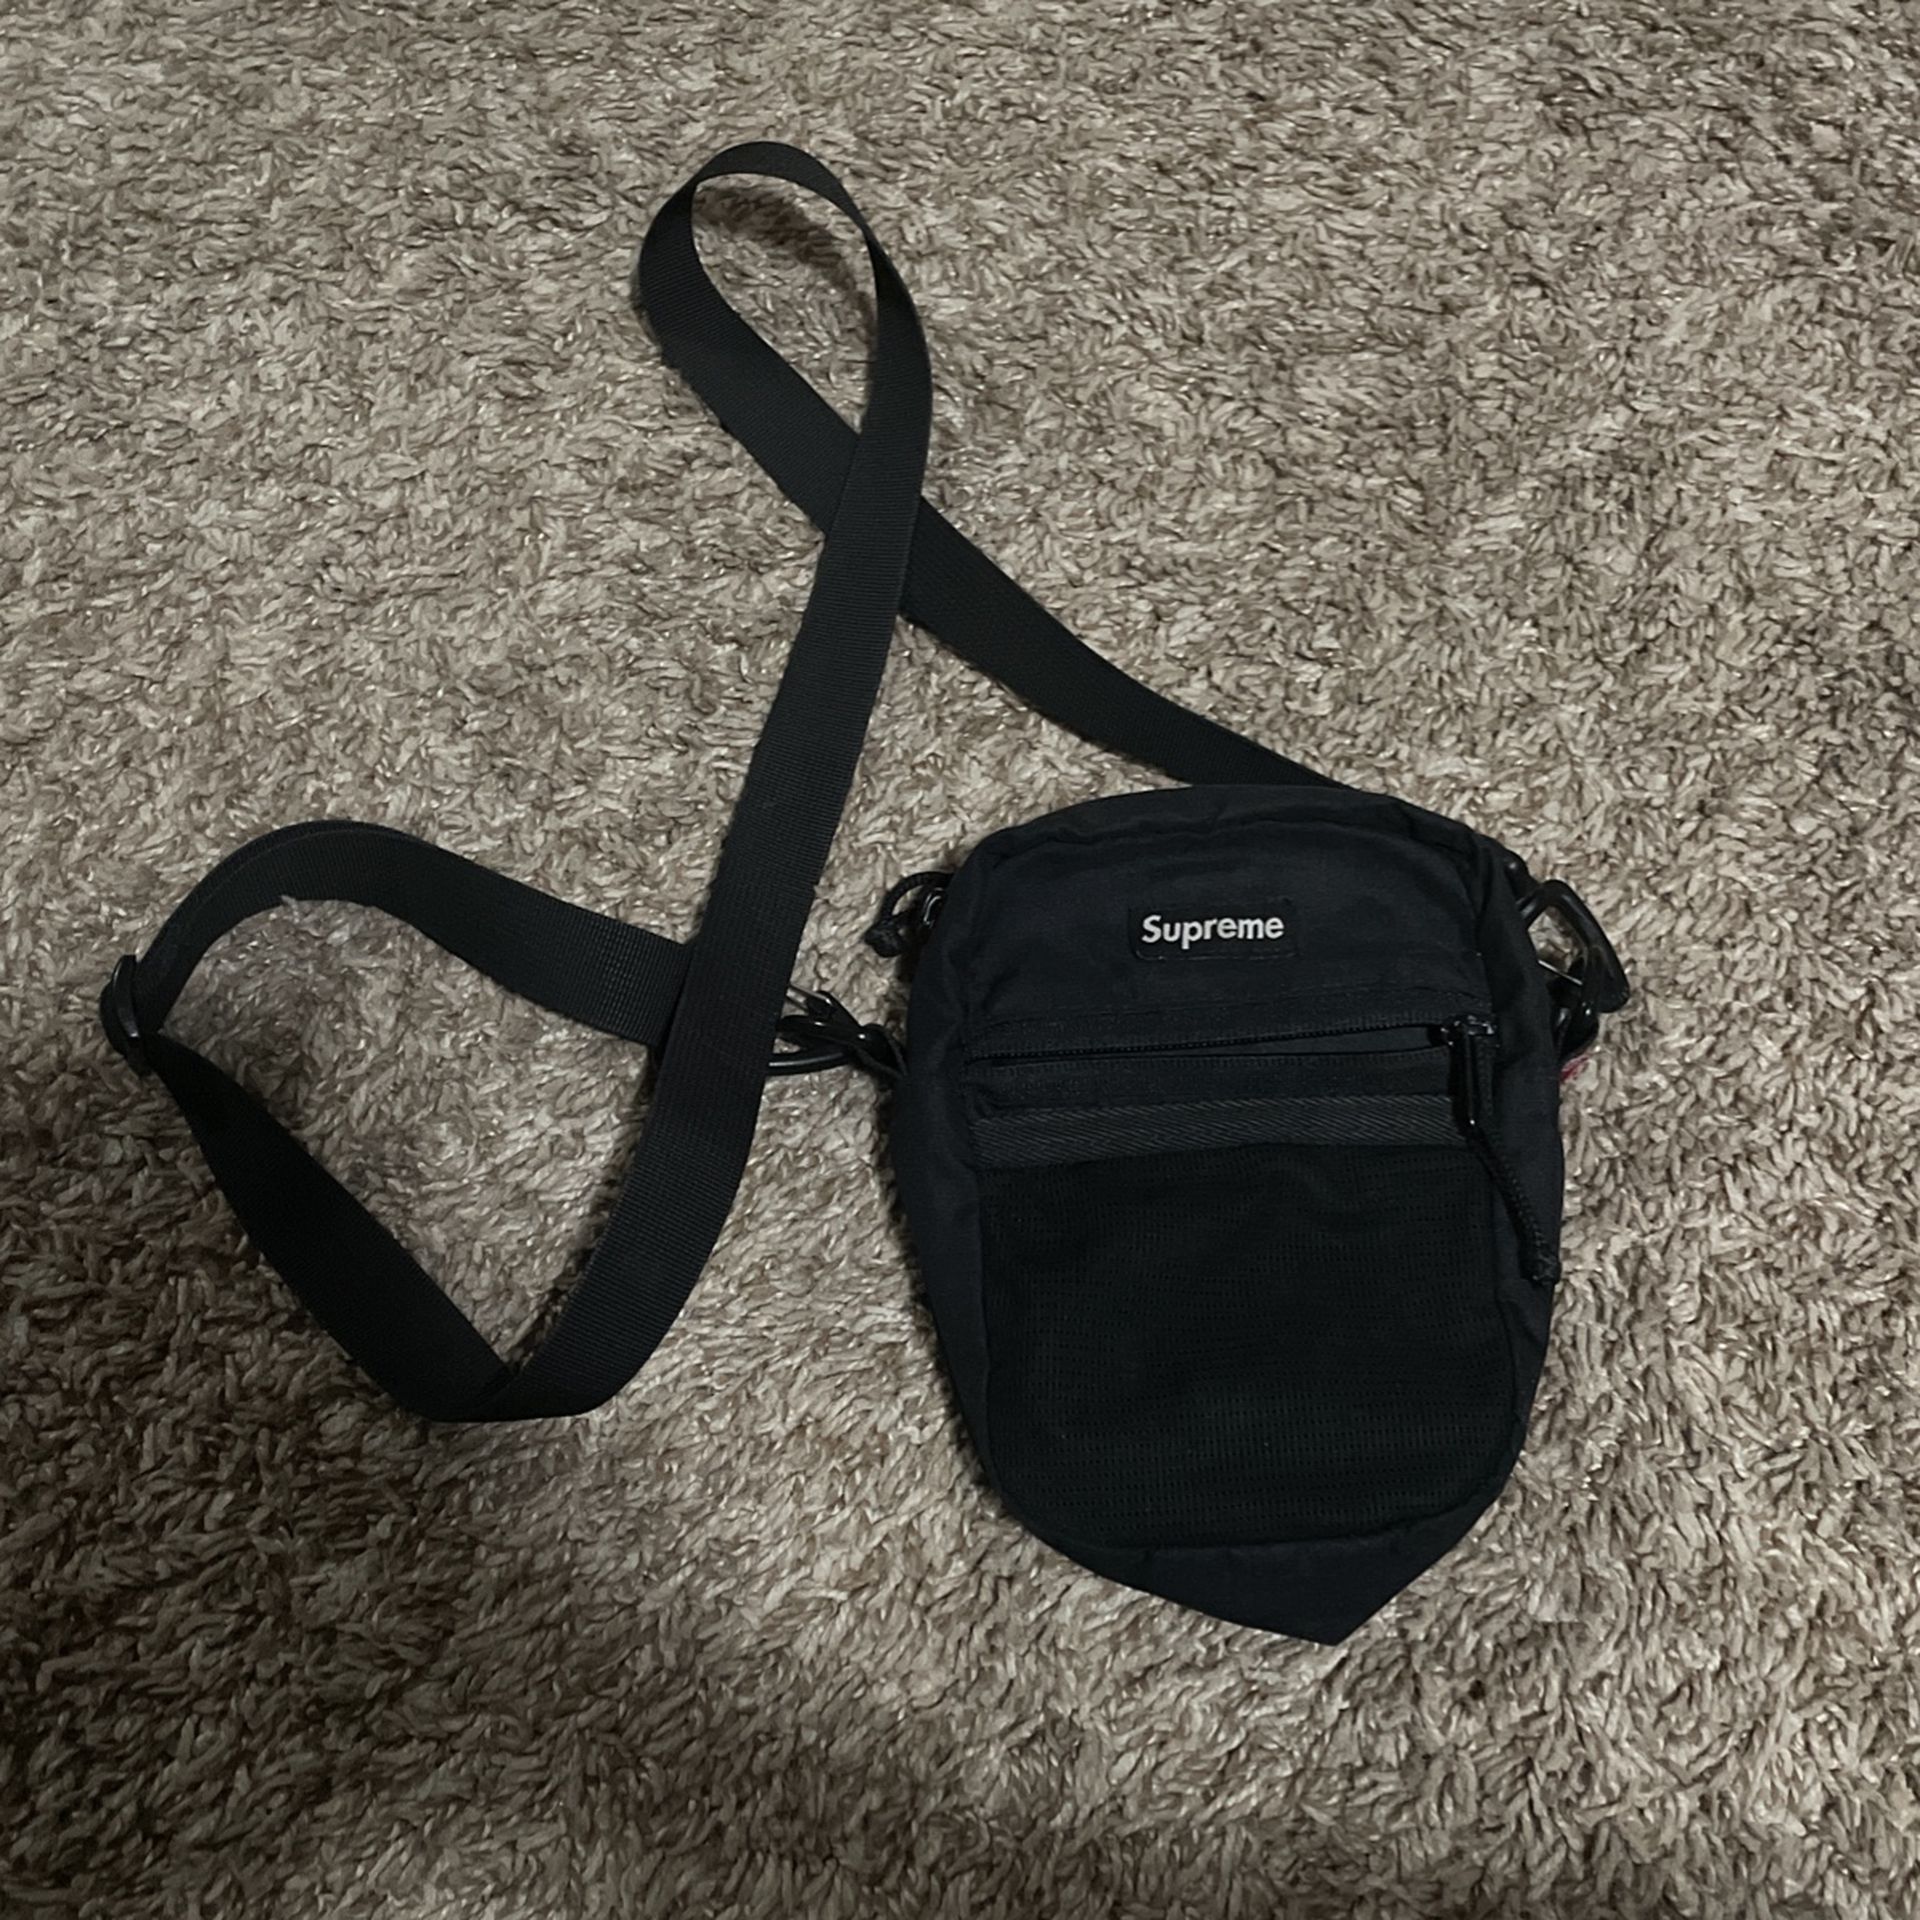 Supreme Small Shoulder Bag